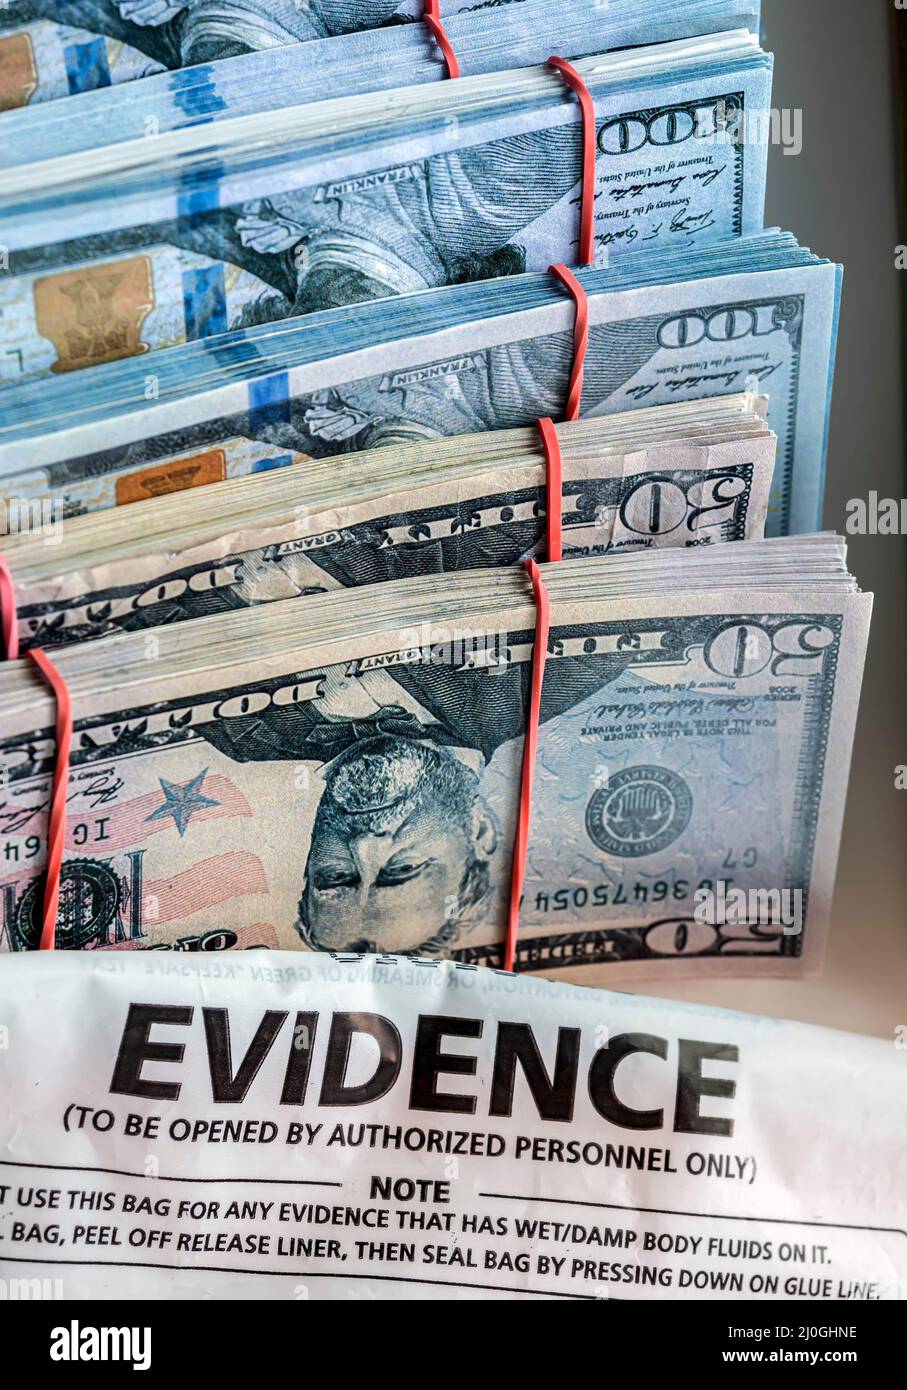 Sac de preuves à côté des billets en dollars dans une unité d'enquête sur le crime, image conceptuelle Banque D'Images